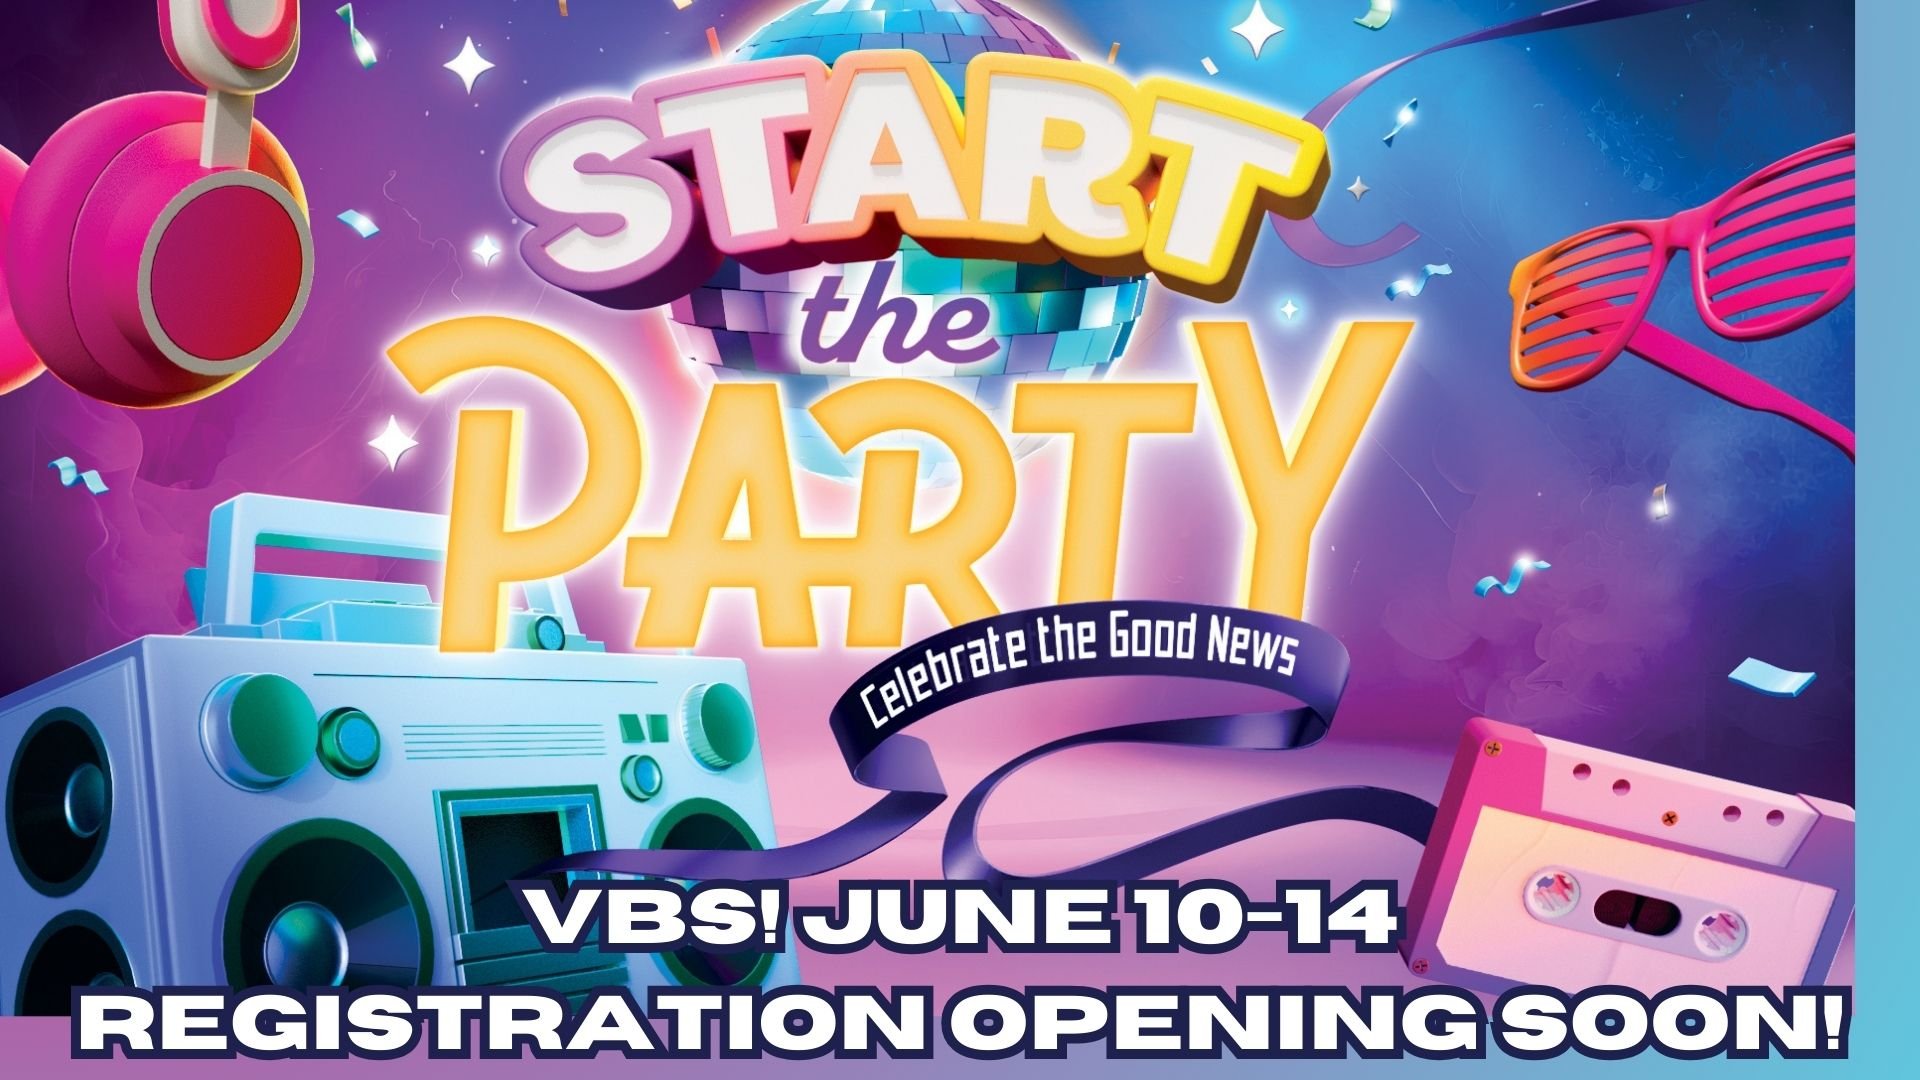 VBS! JUNE 10-14 Registration Opening Soon!.jpg